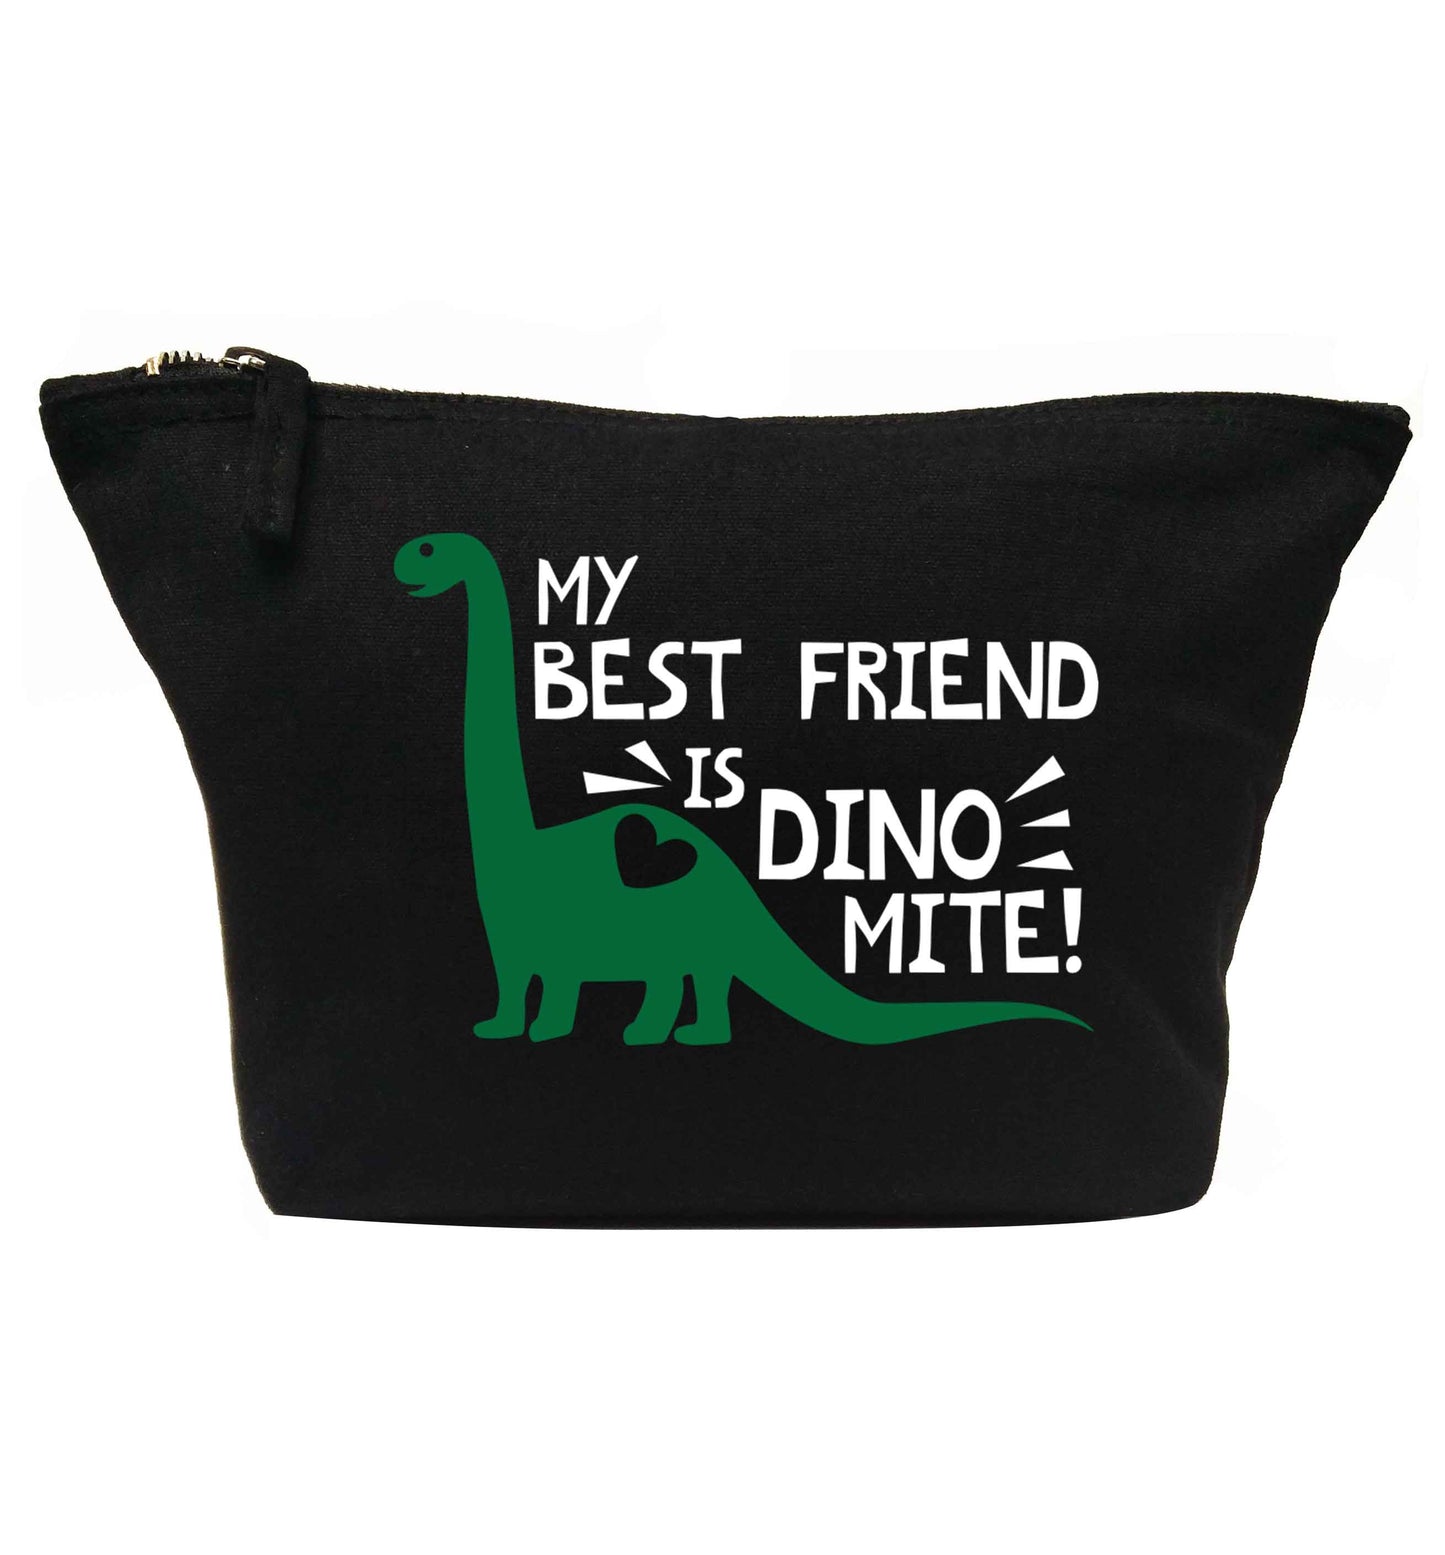 My best friend is dinomite! | makeup / wash bag